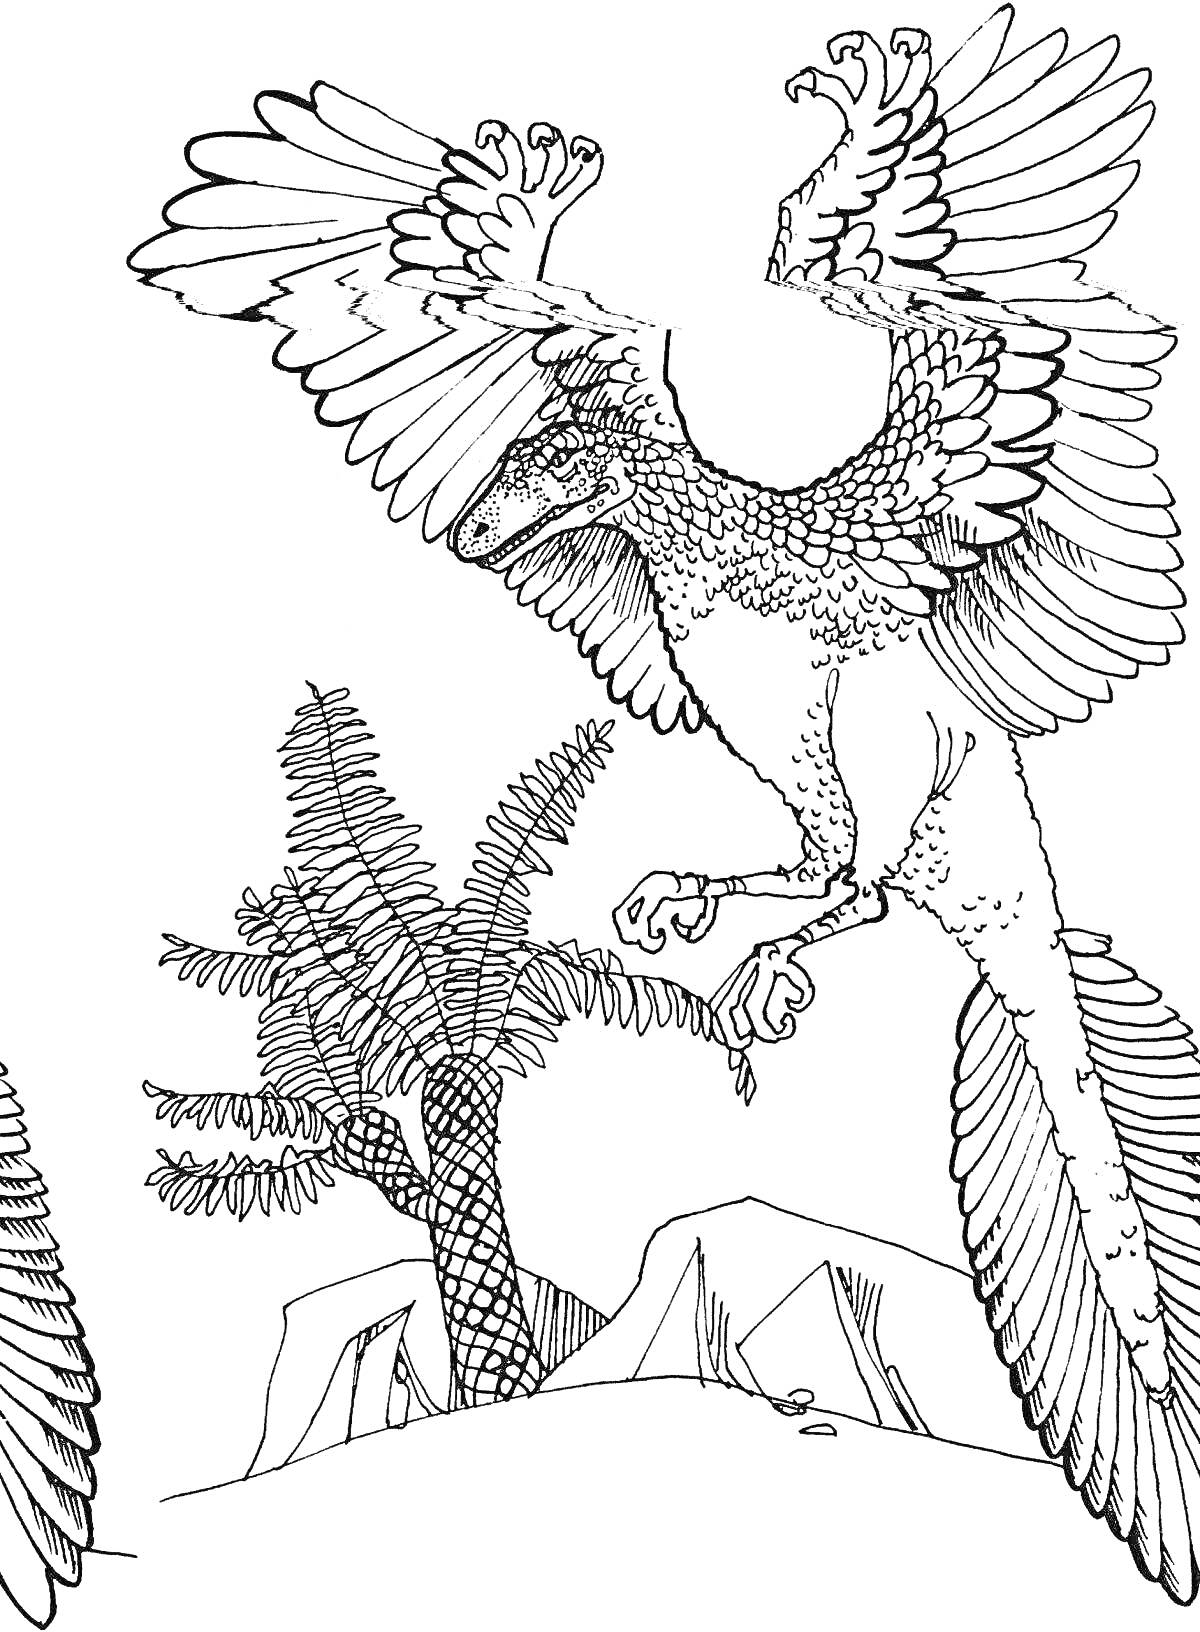 Раскраска Летающий археоптерикс среди флоры доисторической эпохи